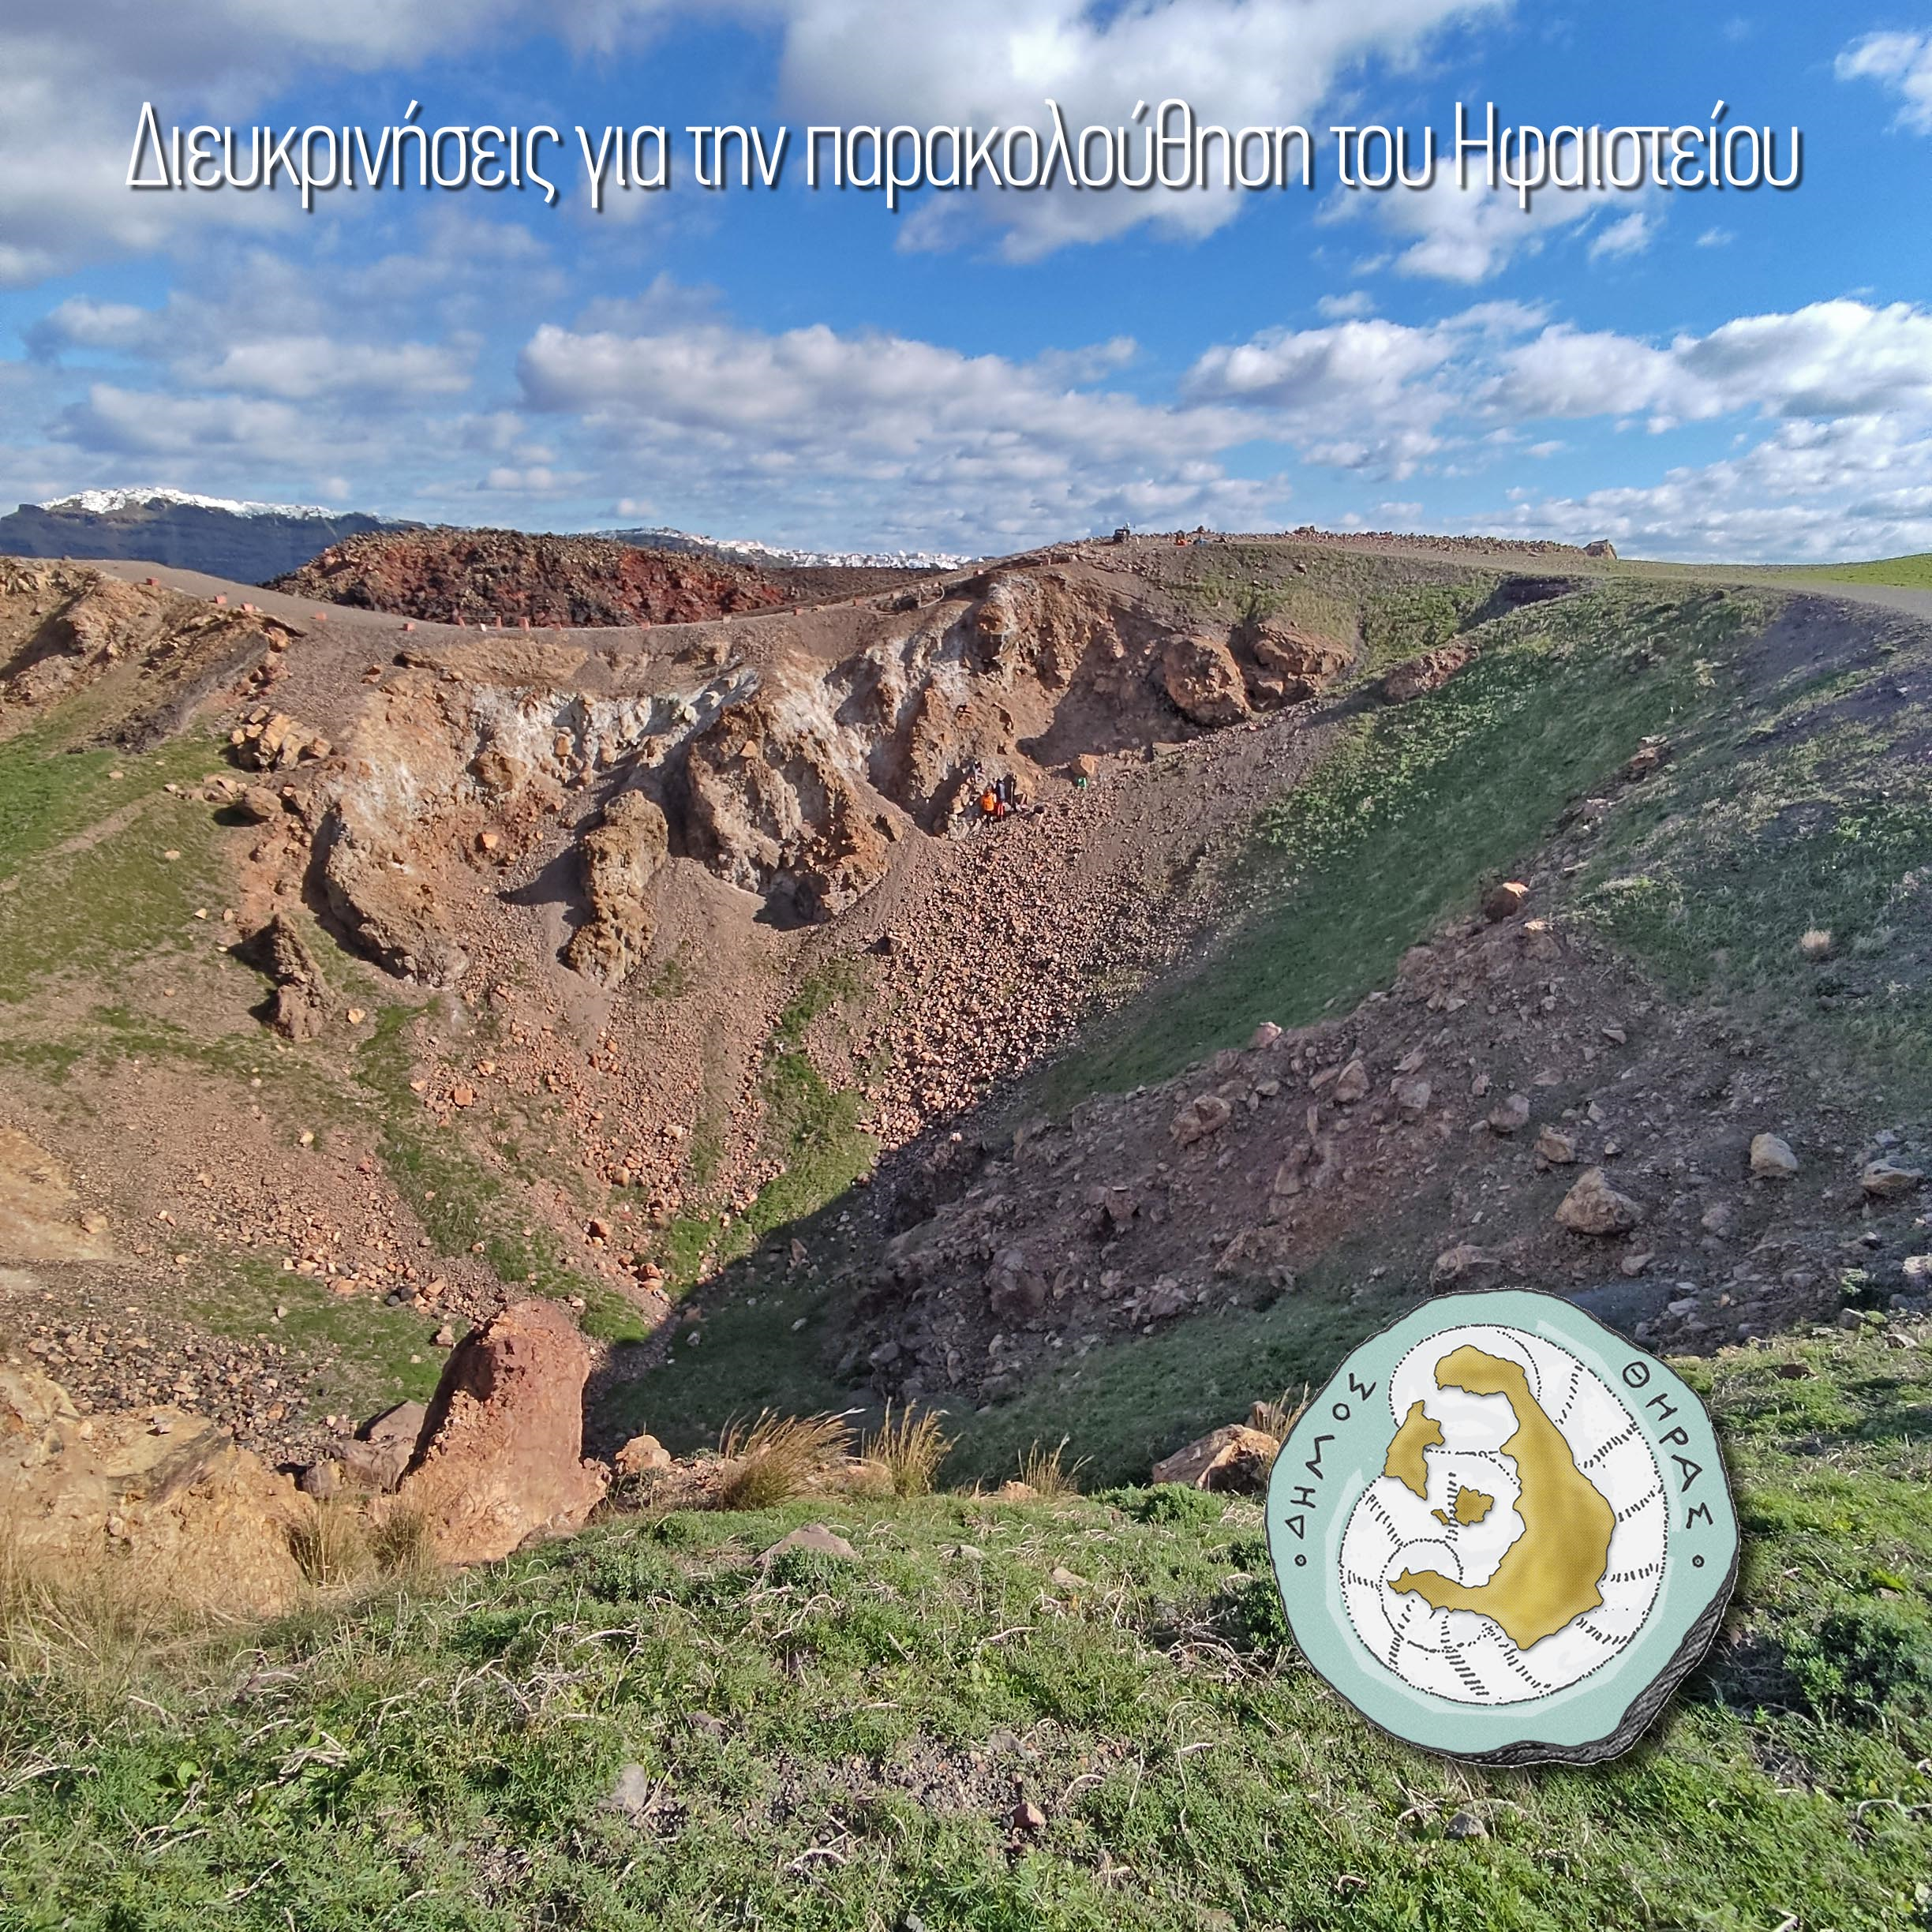 Δήμος Θήρας : Διευκρινήσεις για την παρακολούθηση του Ηφαιστείου 